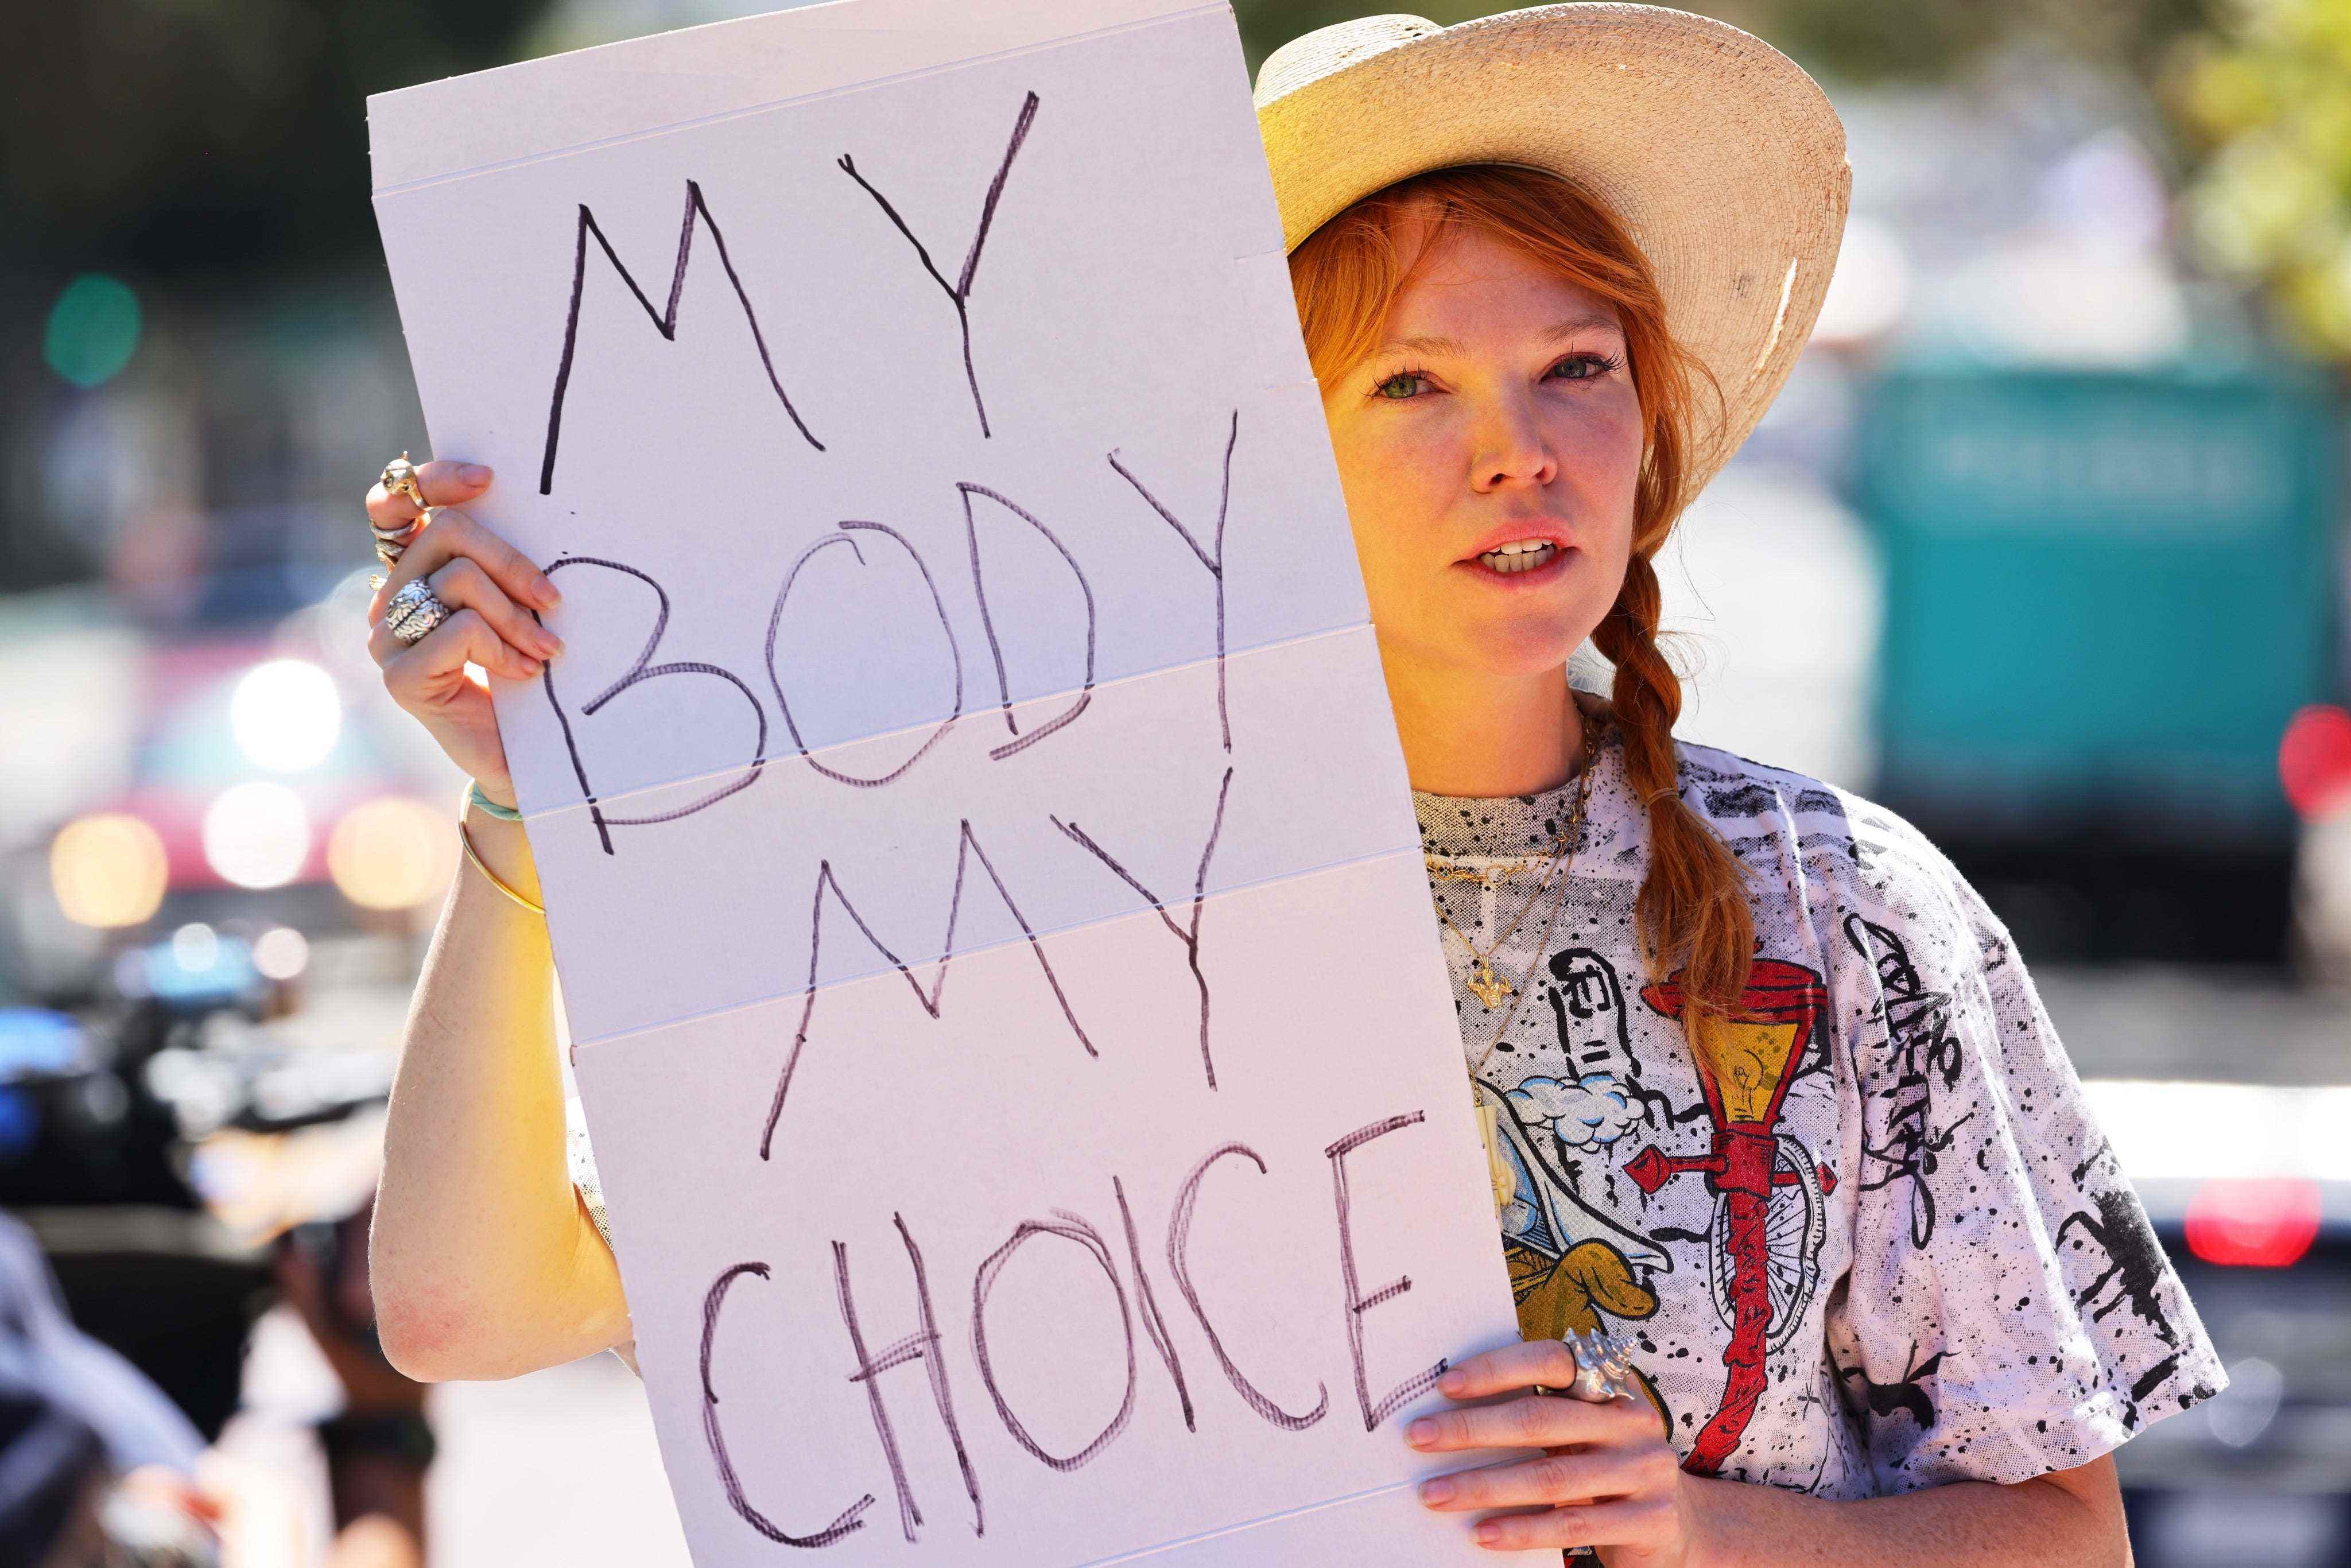 Eine Frau hält ein handgeschriebenes Schild: „Mein Körper, meine Wahl“.